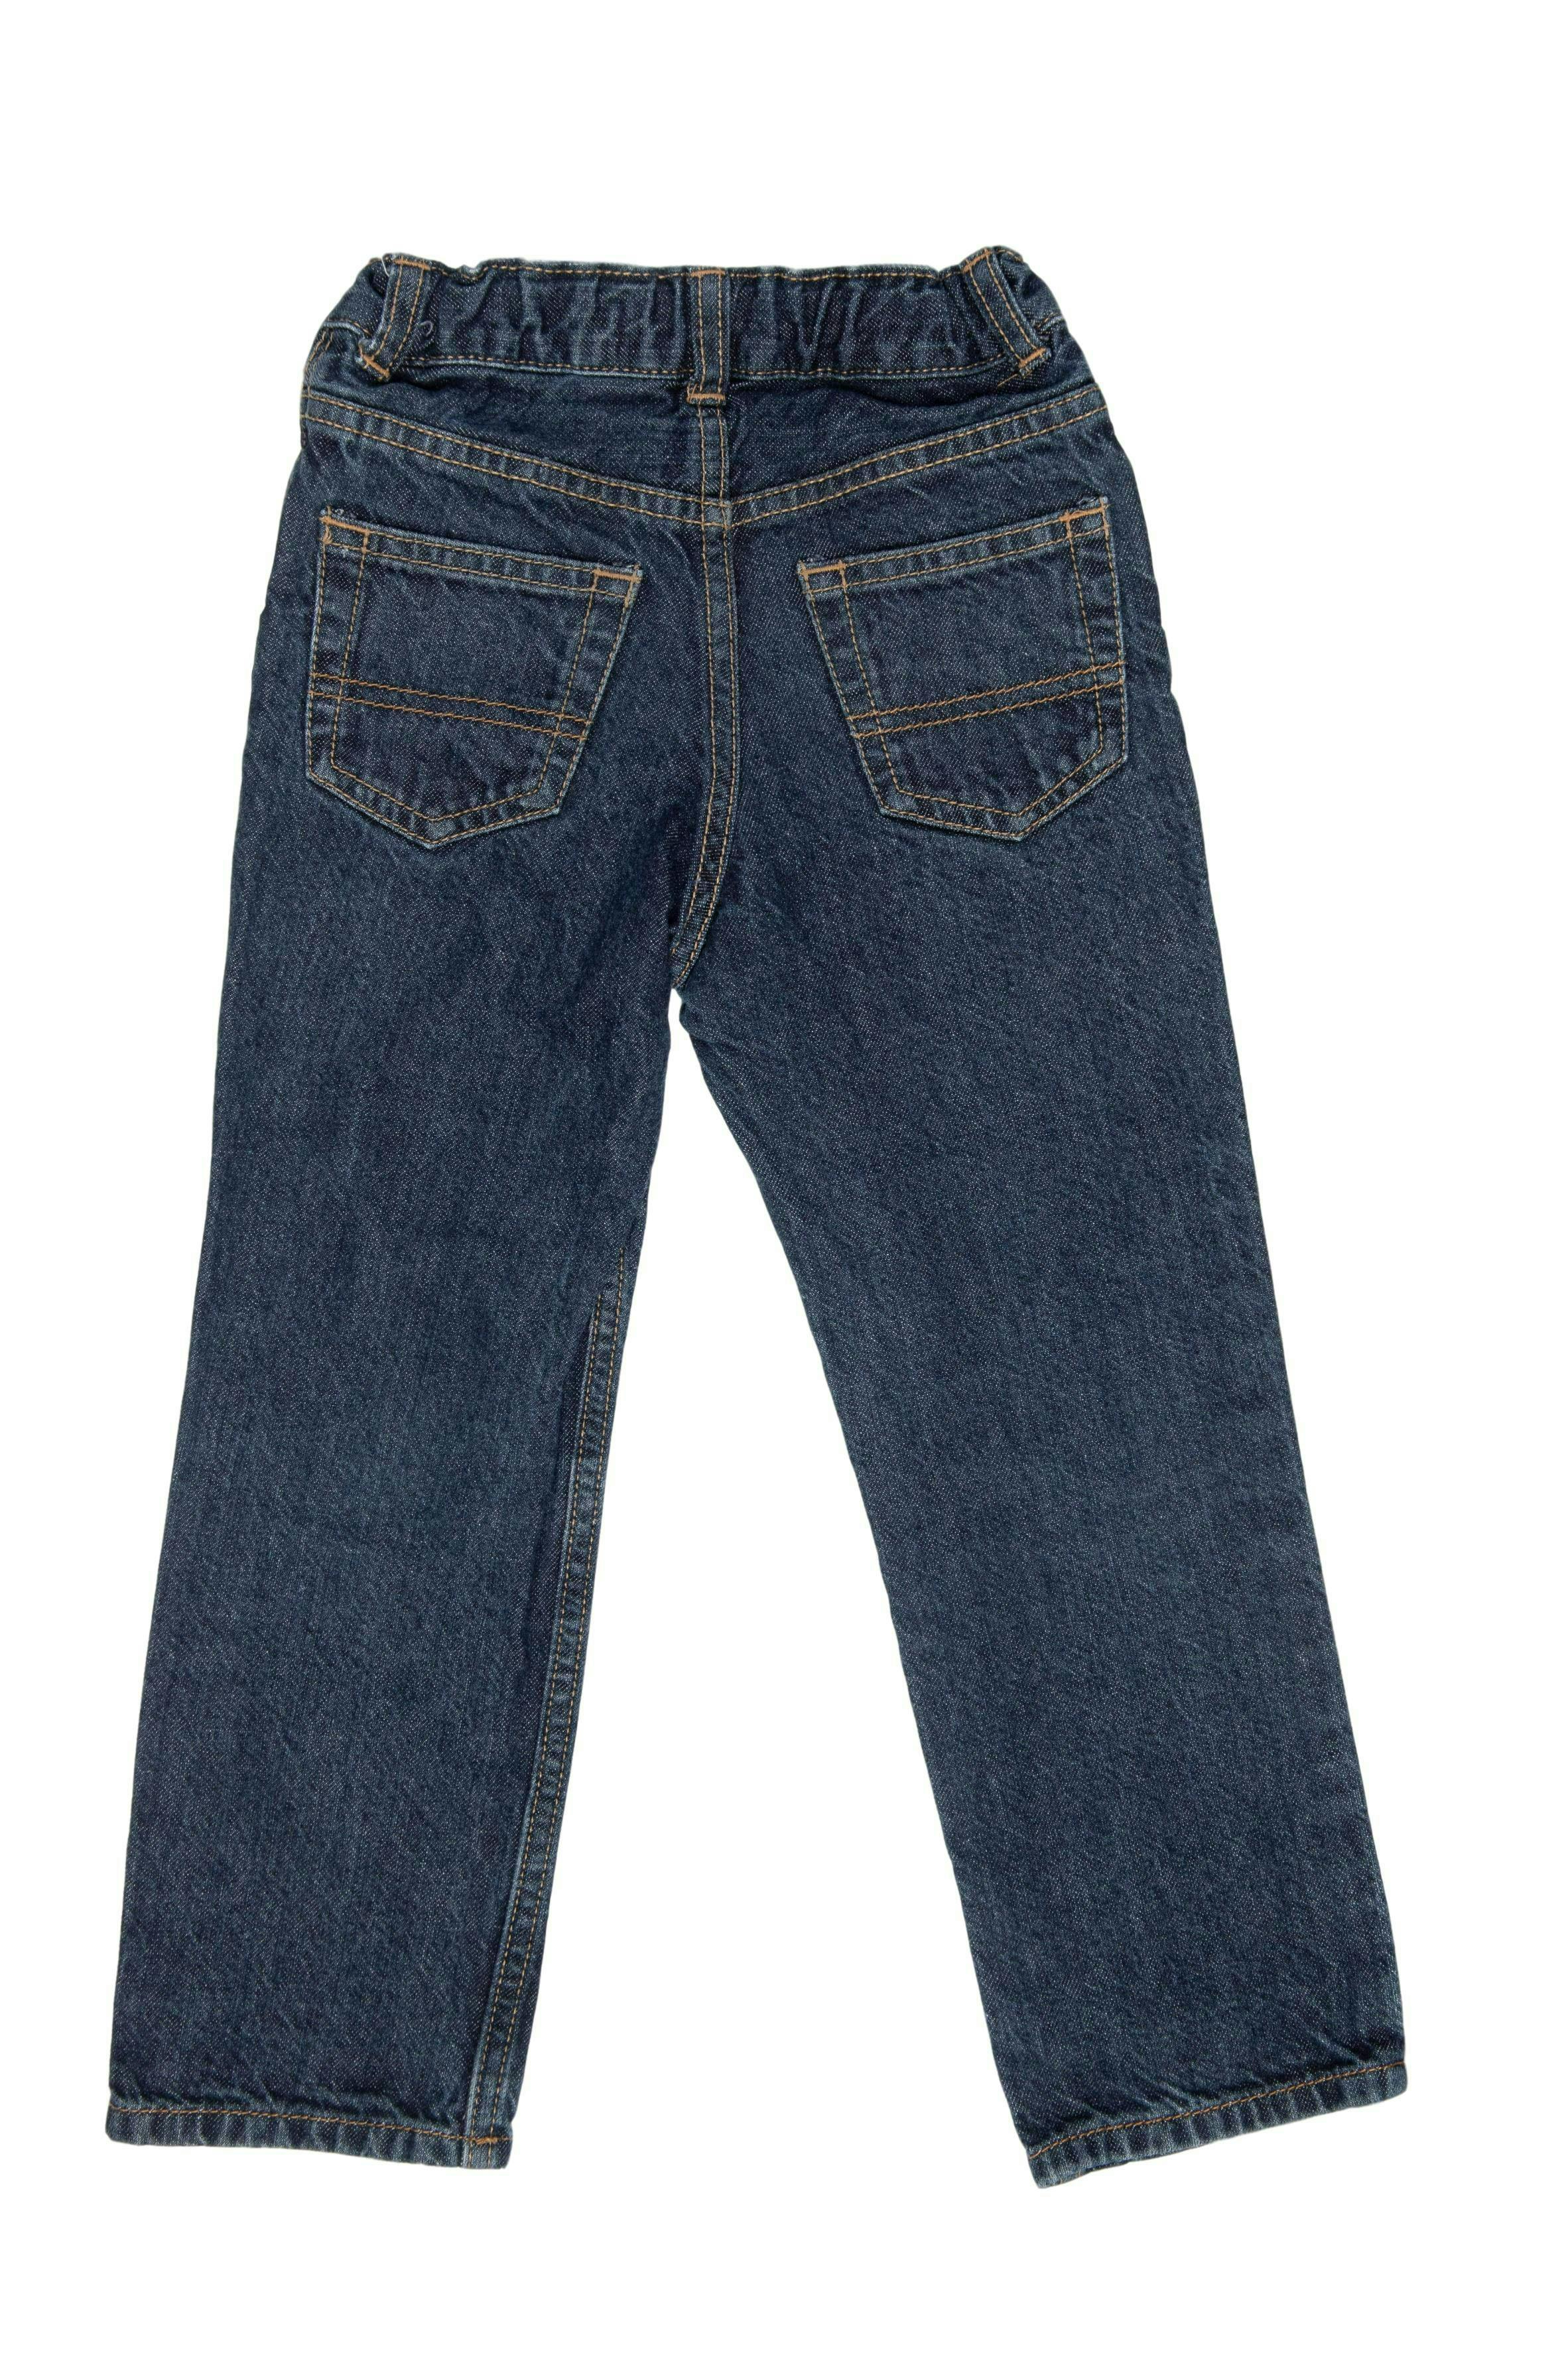 Jean con cintura regulable 100% algodón. Talla en etiquetra 5T - OshKosh